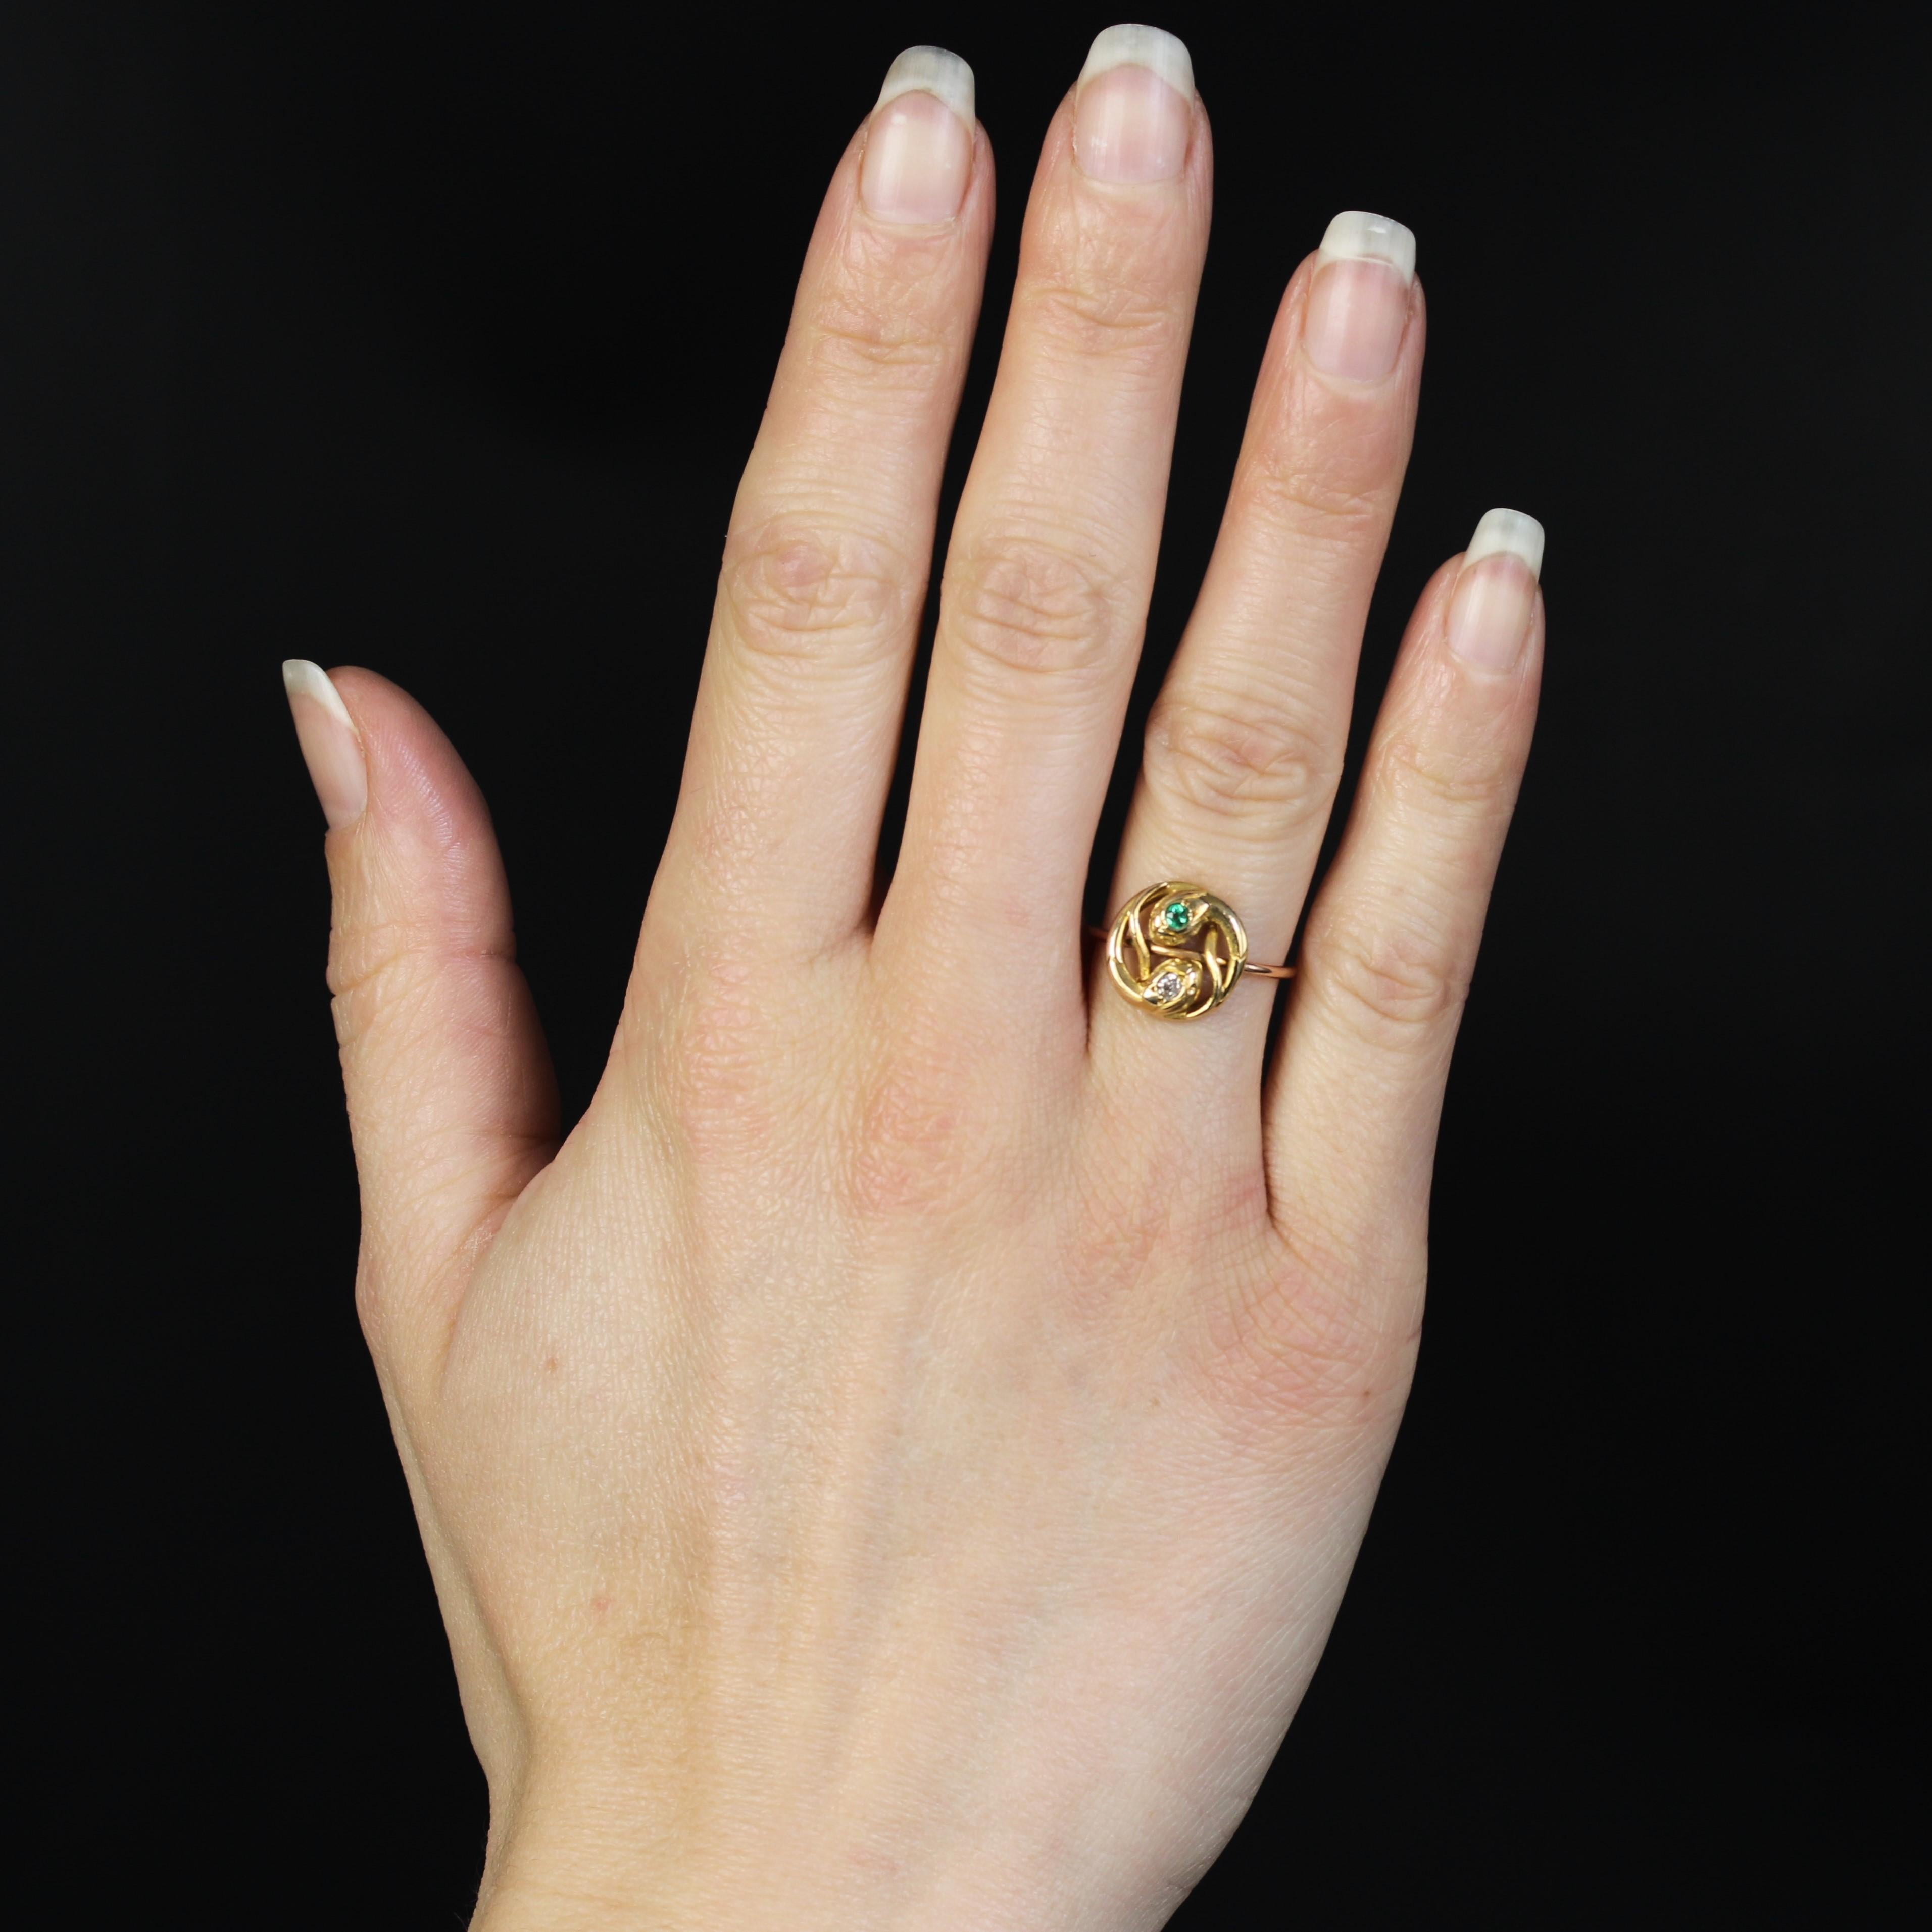 Ring aus 18 Karat Rosé- und Gelbgold, Pferdekopfpunze.
Dieser bezaubernde Ring ist mit 2 ineinander verschlungenen Schlangen besetzt, die eine mit einem runden Smaragd, die andere mit einem Diamanten im Antikschliff im Brillantschliff. Der Ring ist